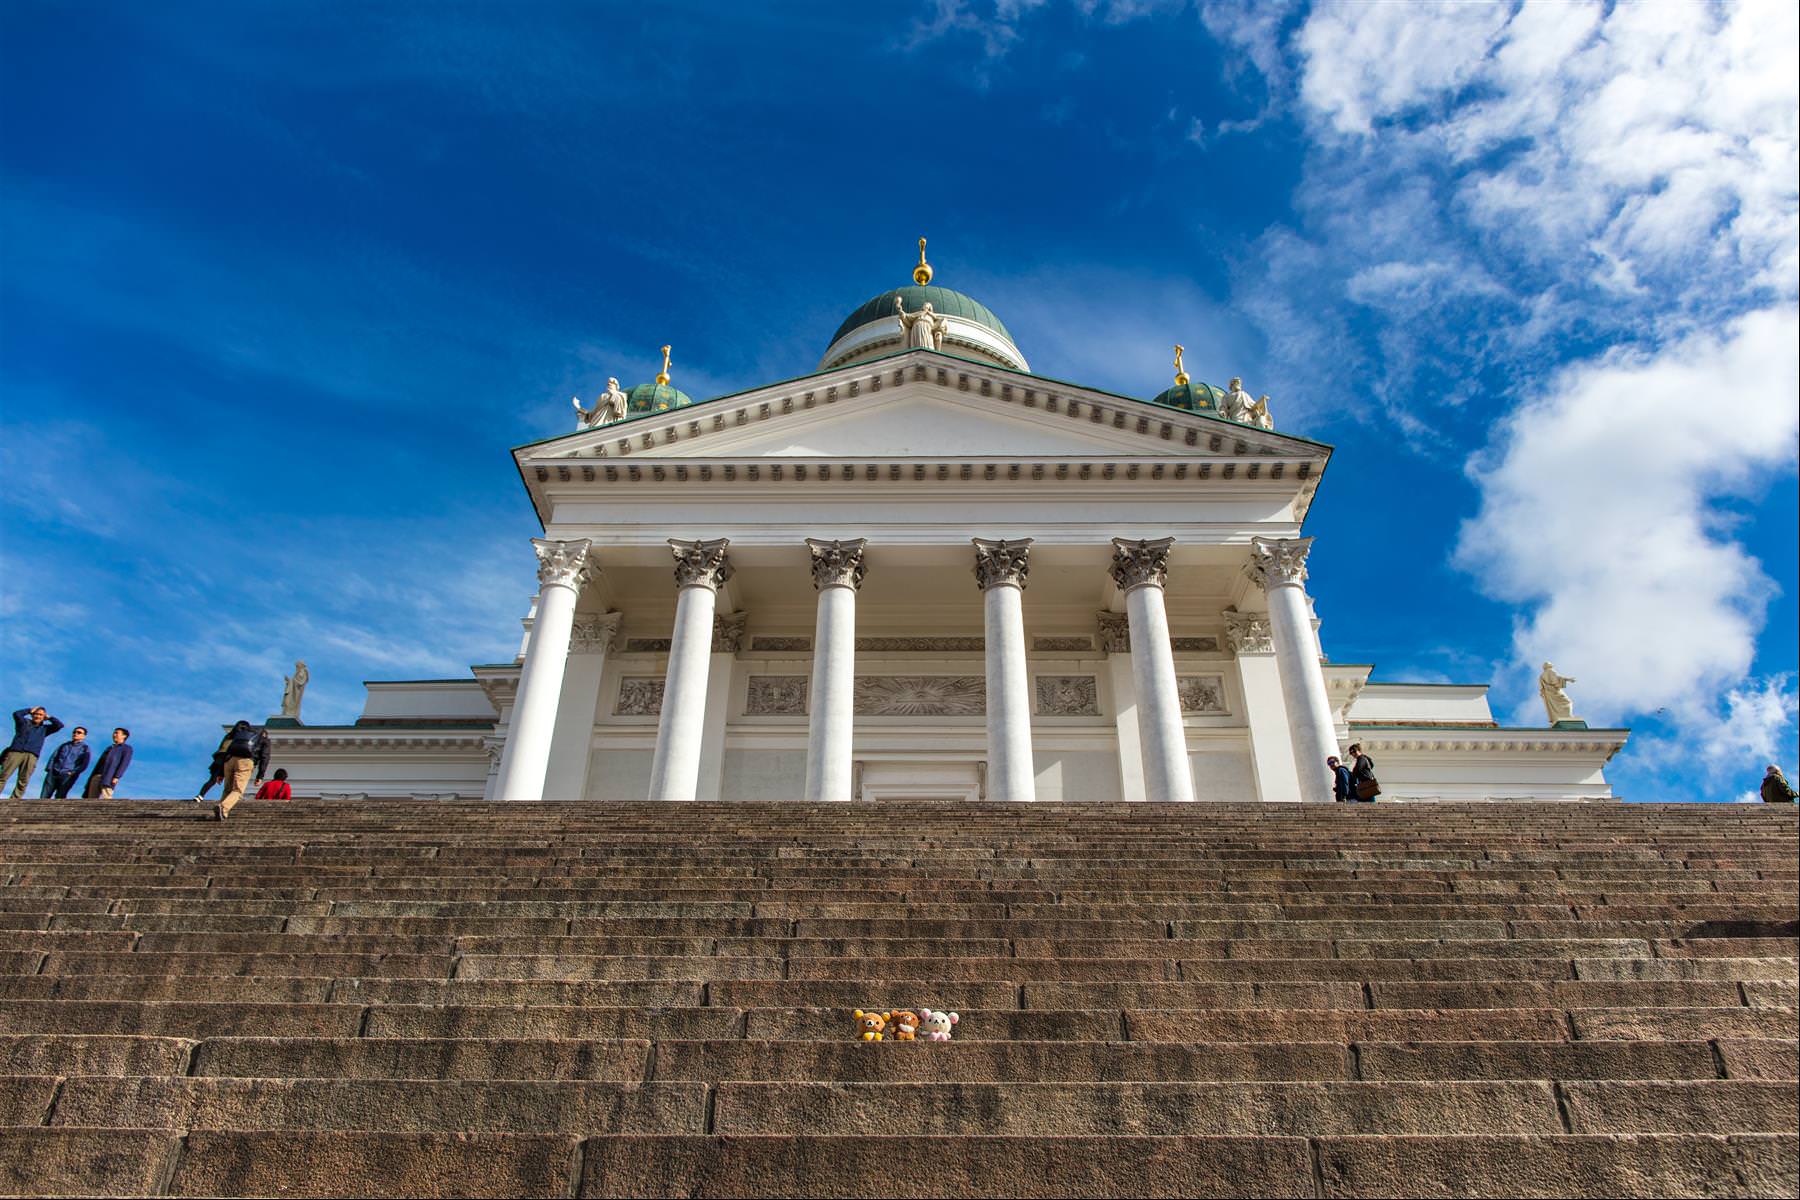 [巨大旅遊] 北歐五國 17 日旅程第 06 日 – 赫爾辛基議會廣場、西貝流斯公園、岩石教堂